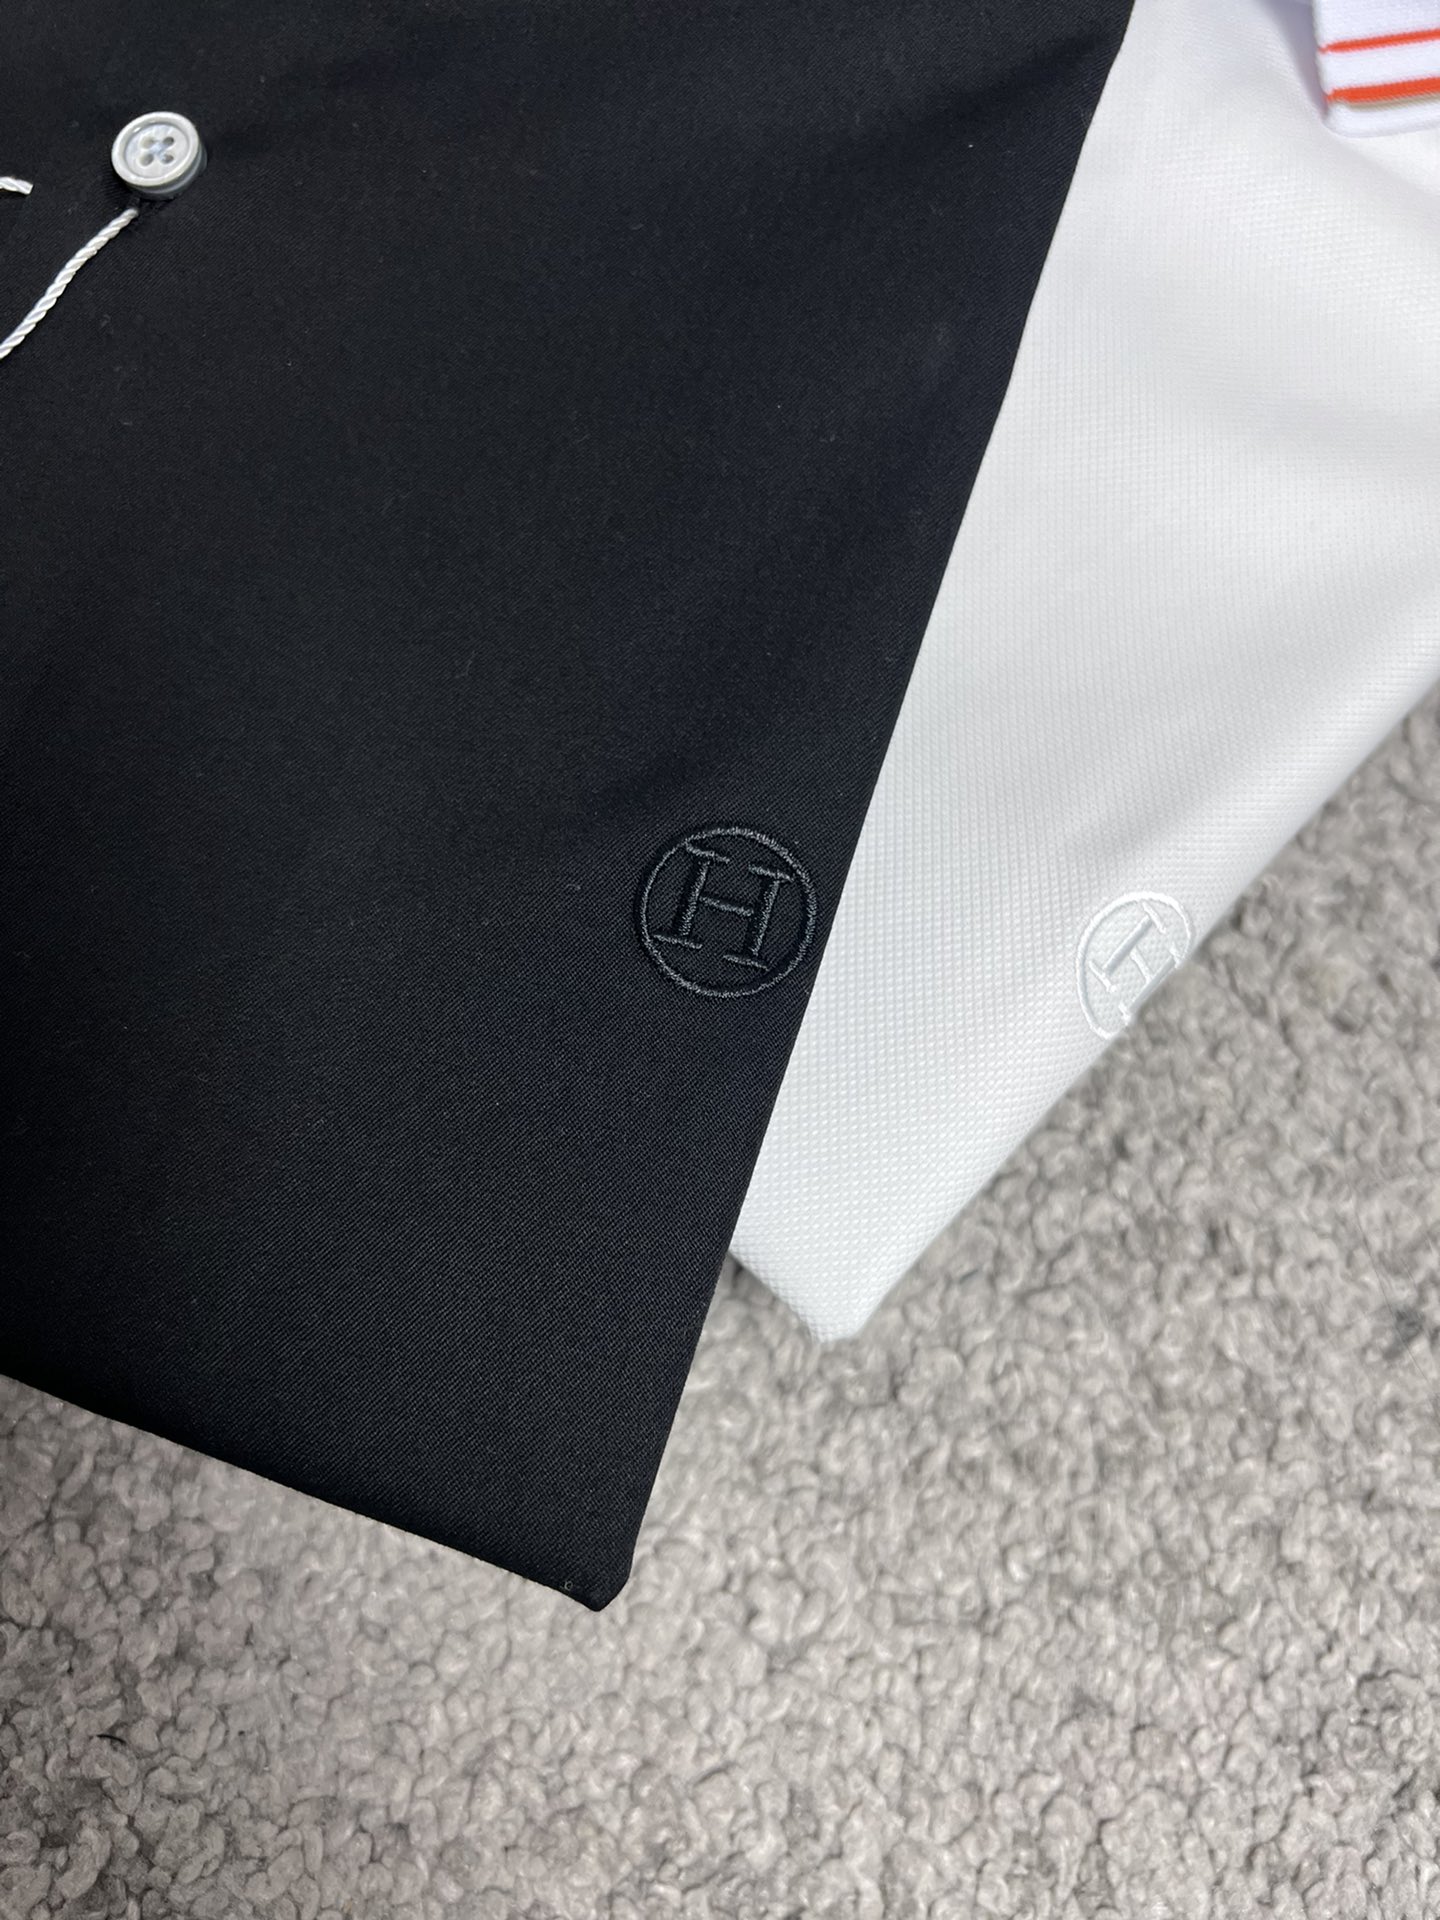 H家23SS春夏新款短袖衬衫针织条纹拼接领设计高端系列黑色白色S,M,L,XL,XXL